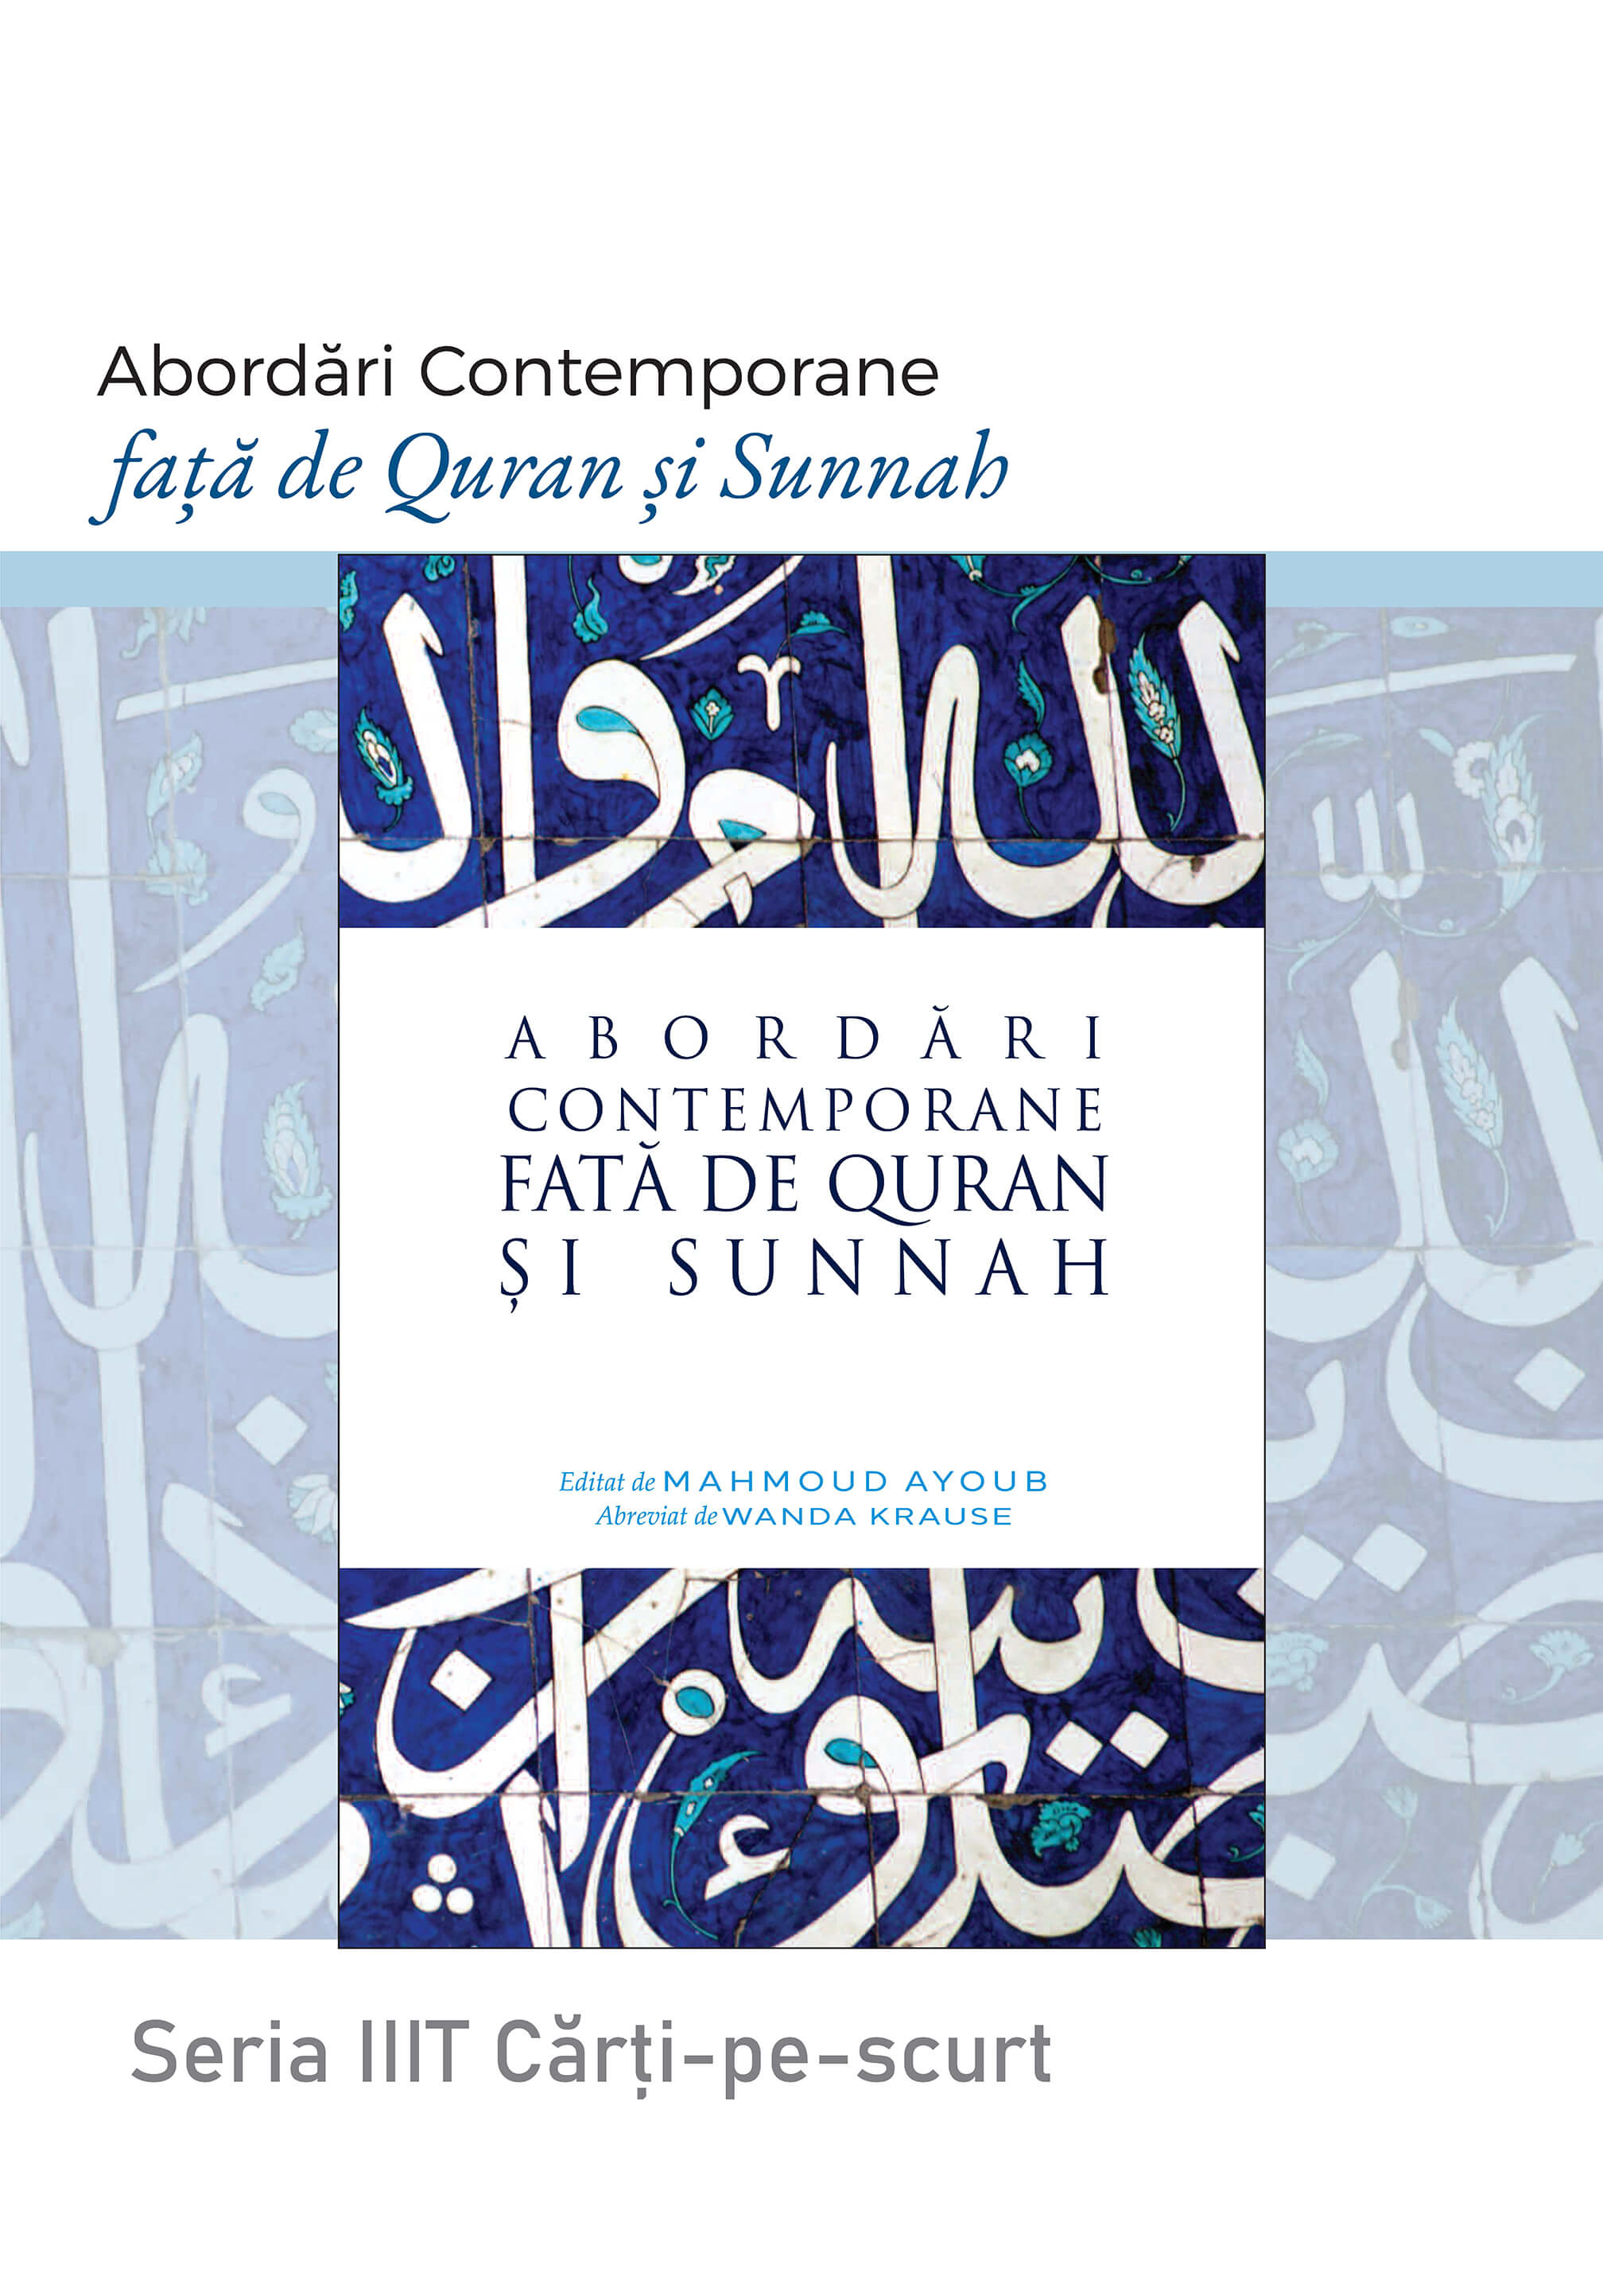 Romanian: Seria Cărți-pe-scurt: Abordări Contemporane Față de Quran și Sunnah (Book-in-Brief: Contemporary Approaches to the Qur’an and Sunnah)